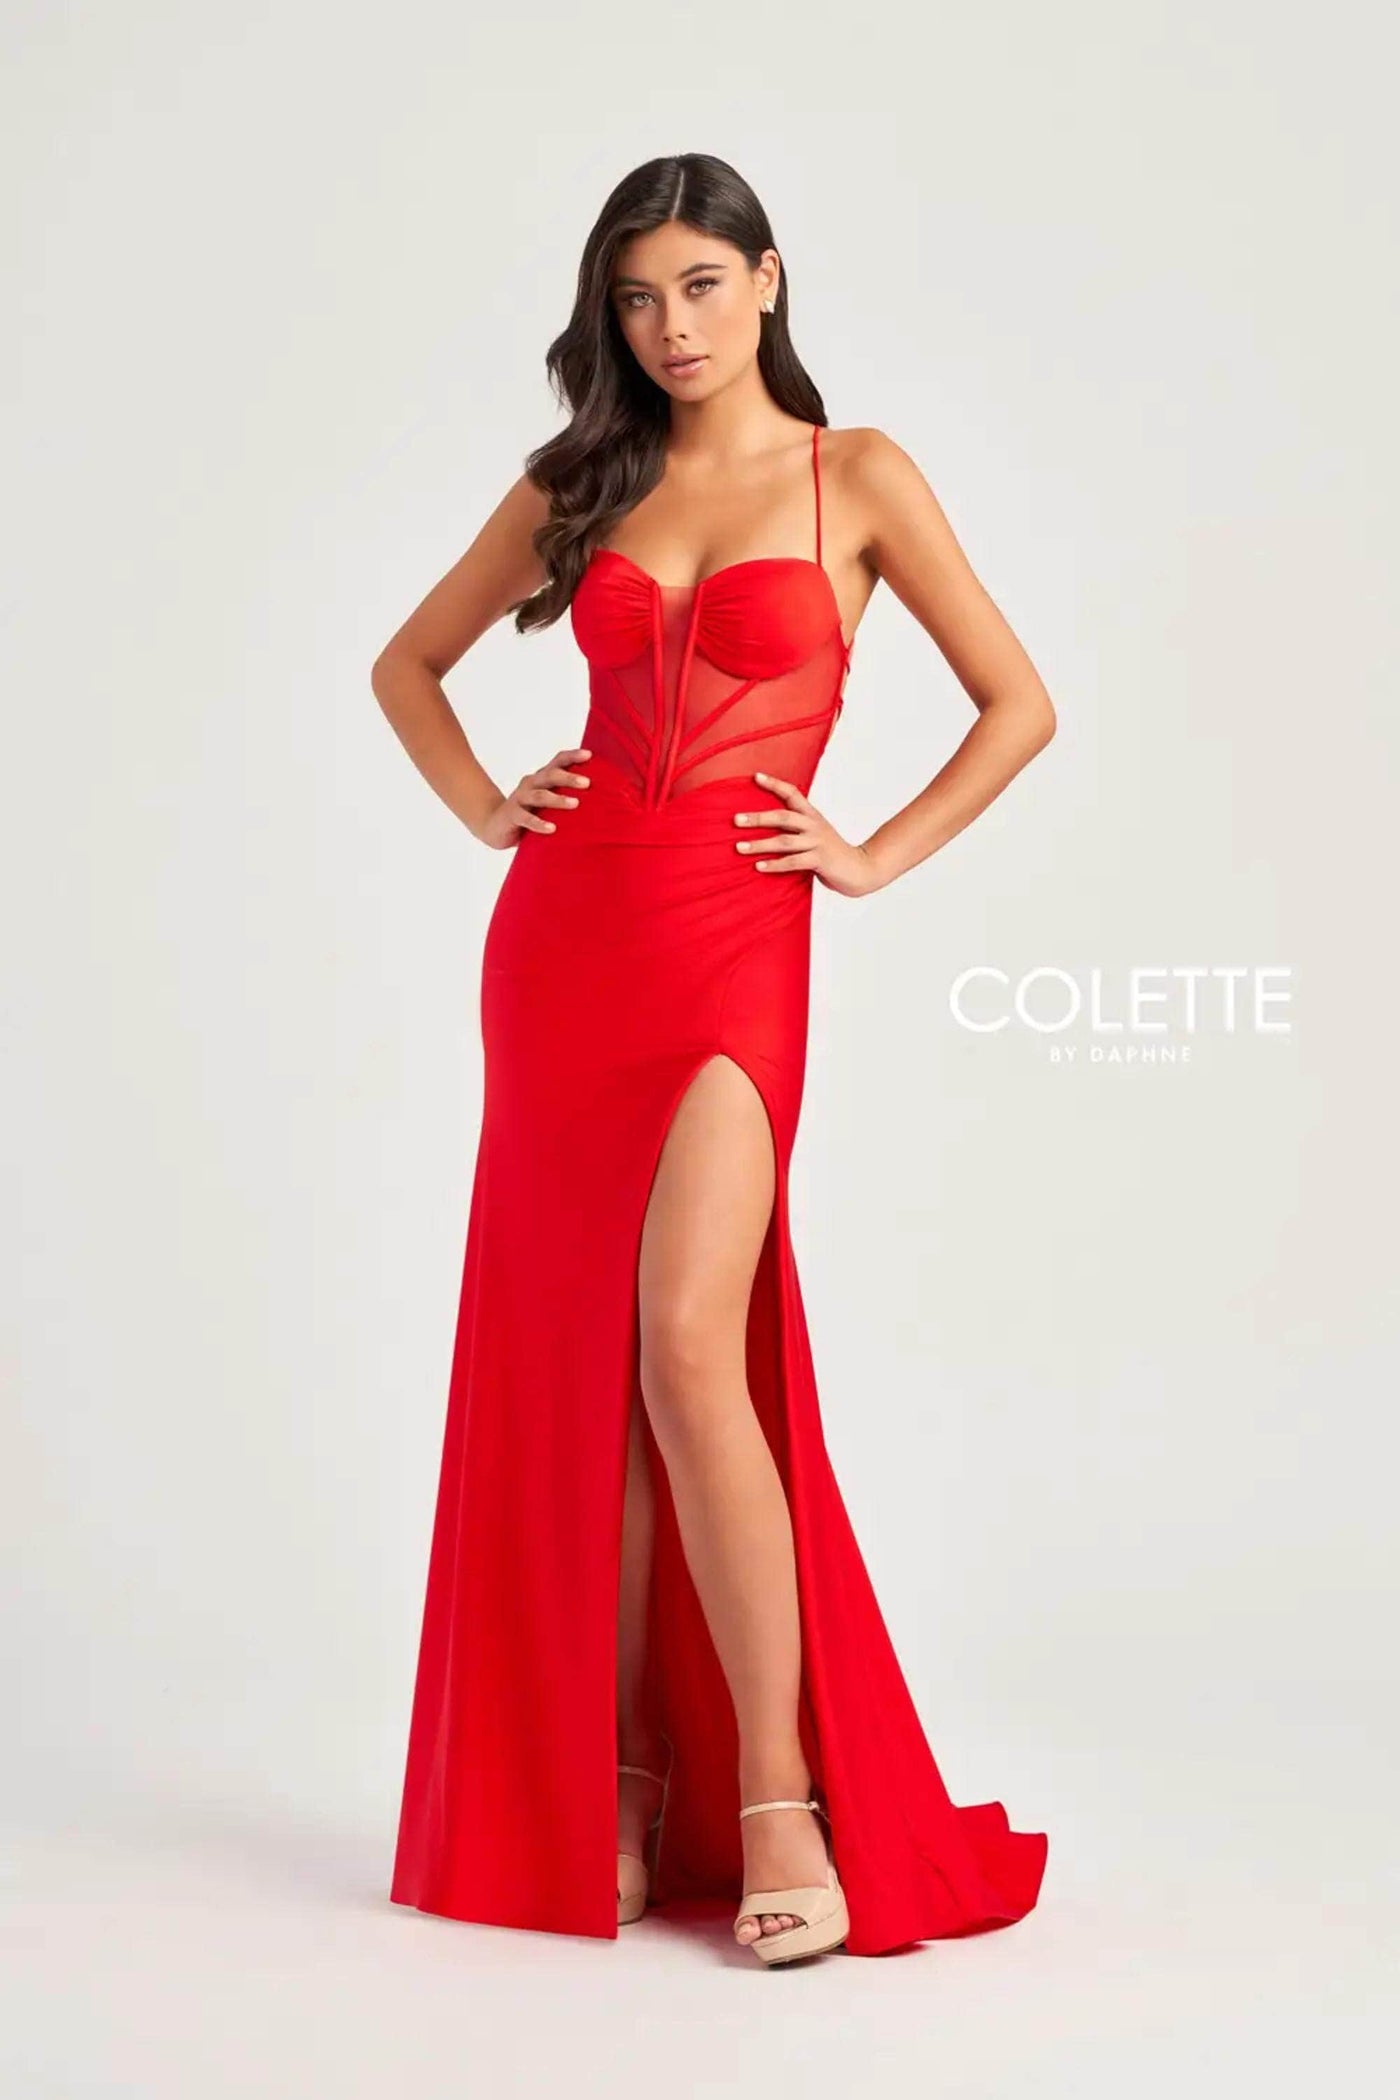 Colette By Daphne CL5140 - Illusion Corset Prom Dress